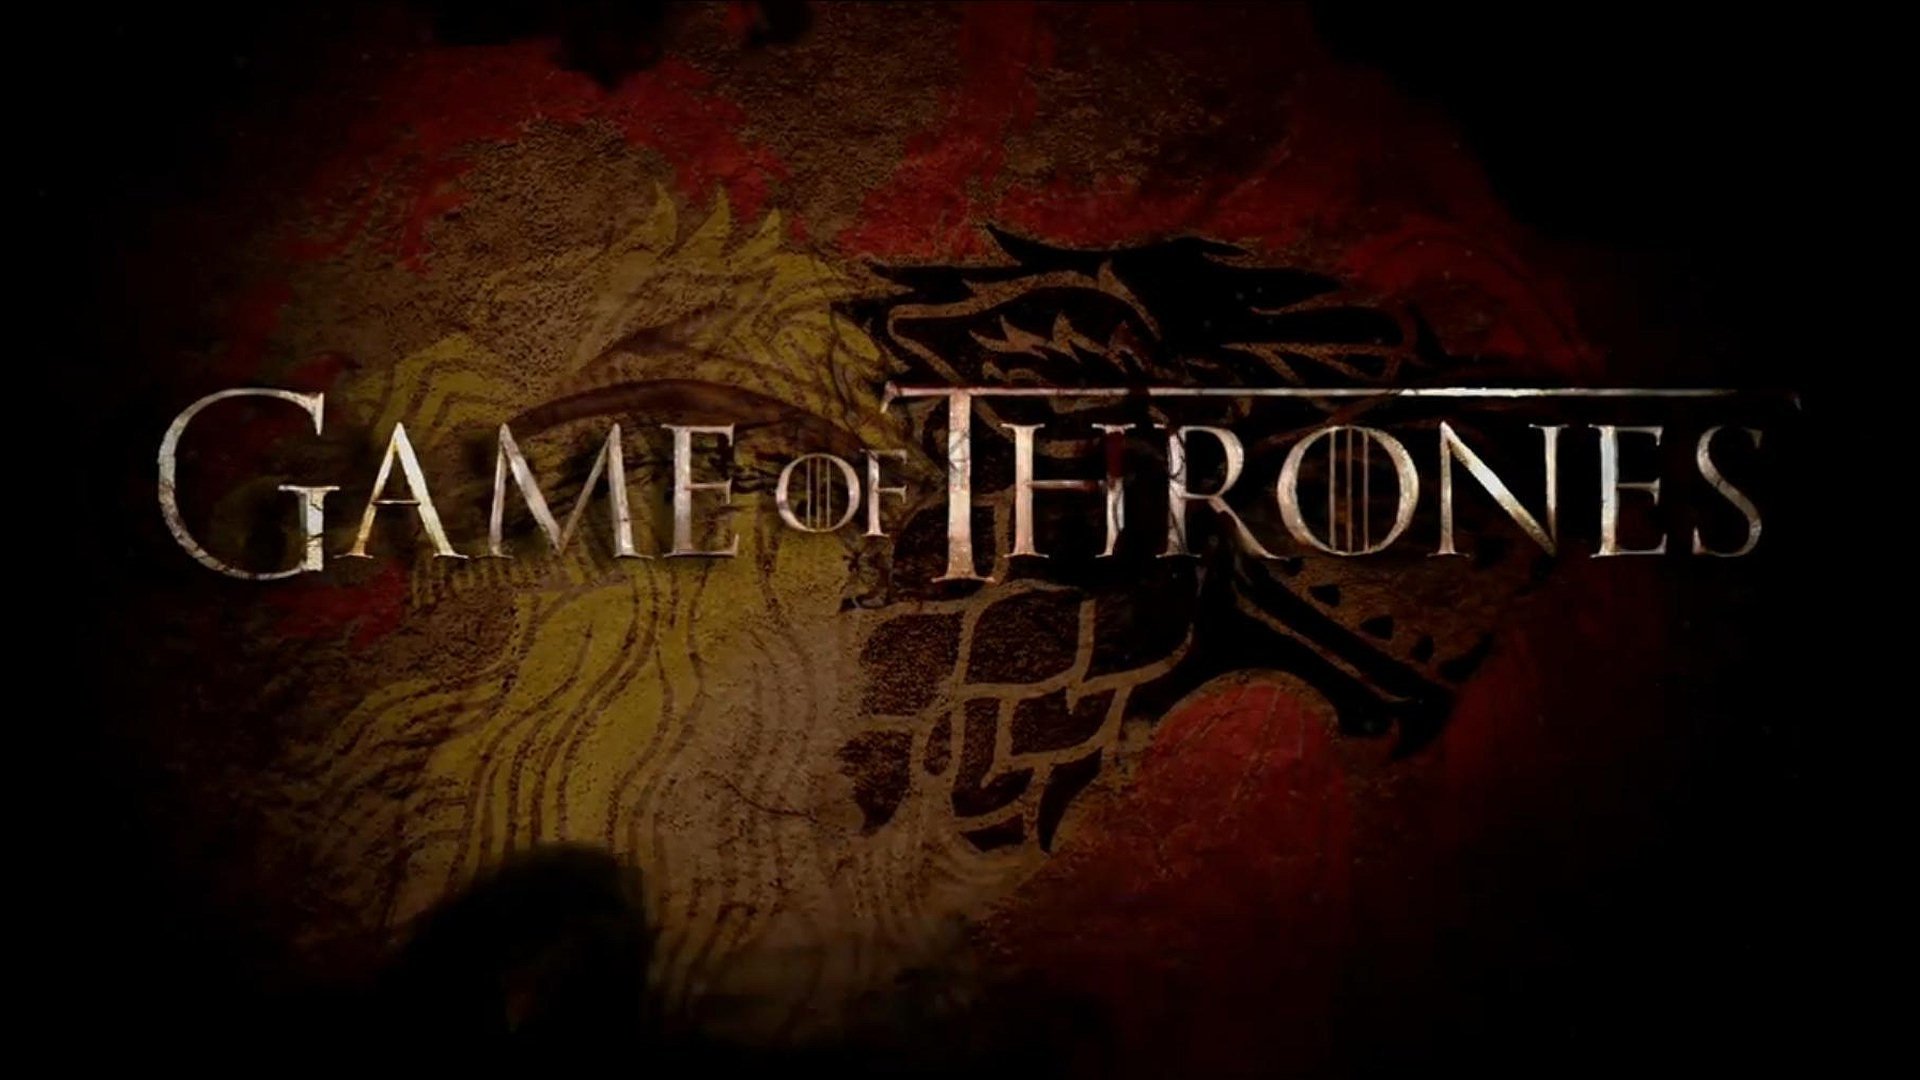 زمان پخش پیش درآمد Game of Thrones با نام House of Dragon مشخص شد - ویجیاتو